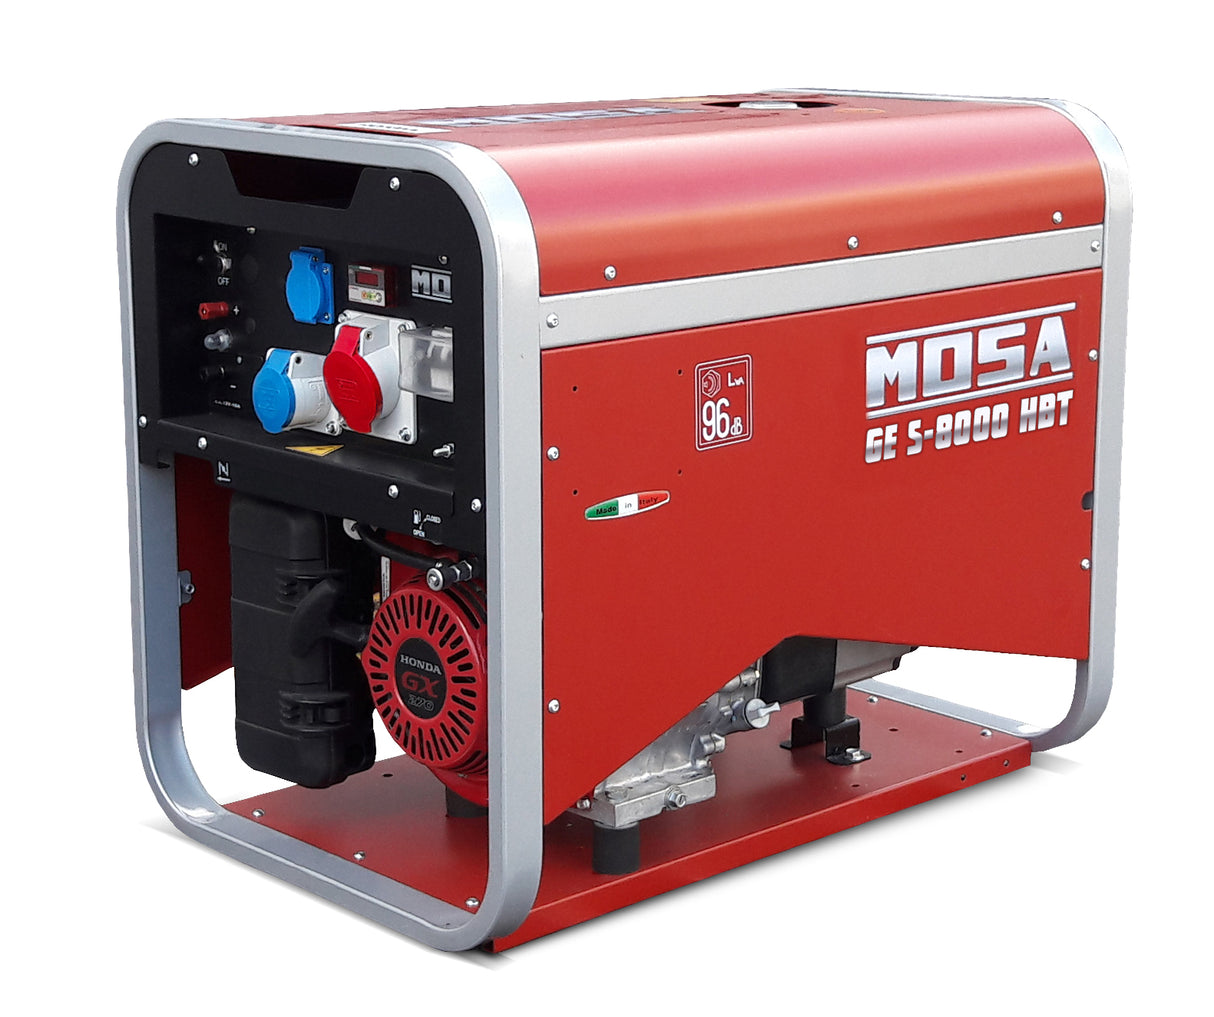 Groupe électrogène portable MOSA GES 8000 HBT AVR 